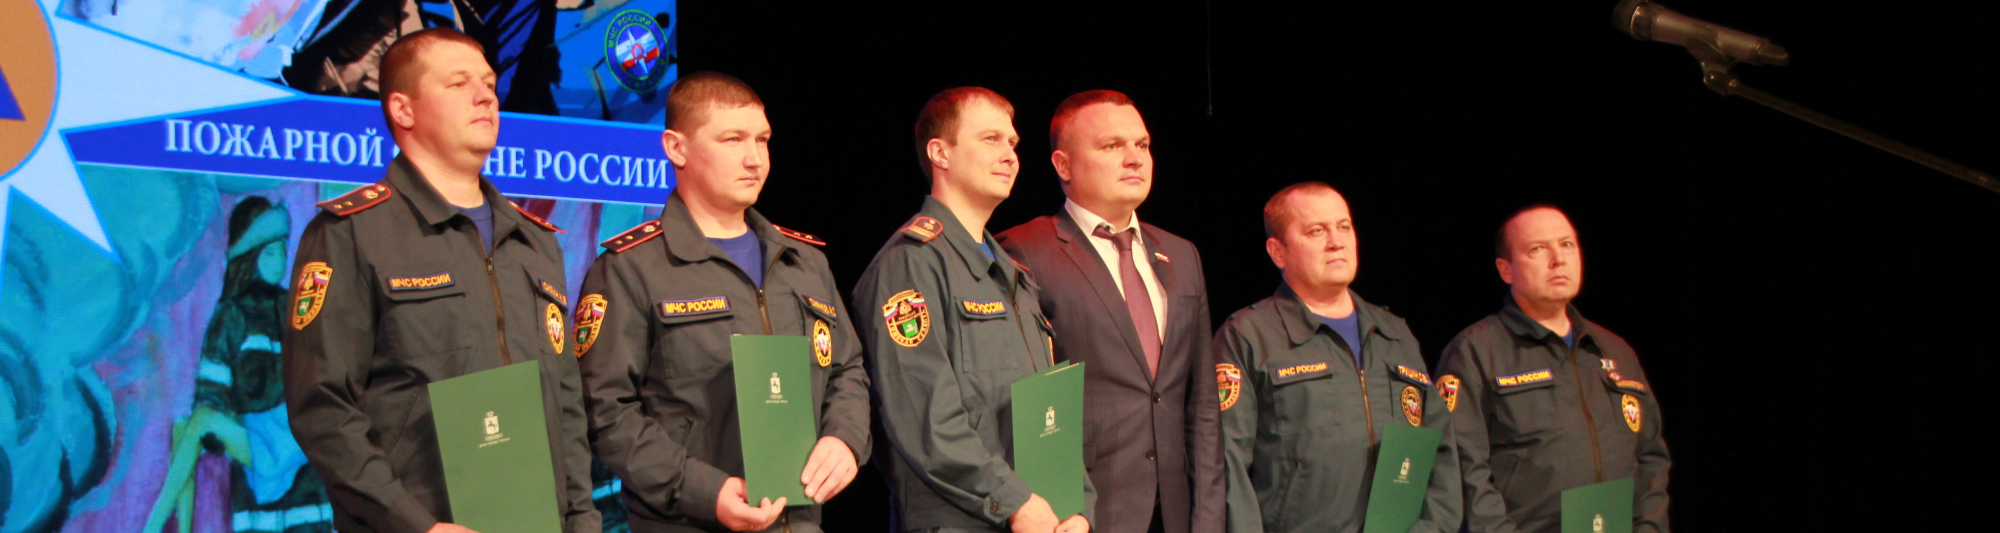 Сергей Панов поздравил спасателей с Днем пожарной охраны